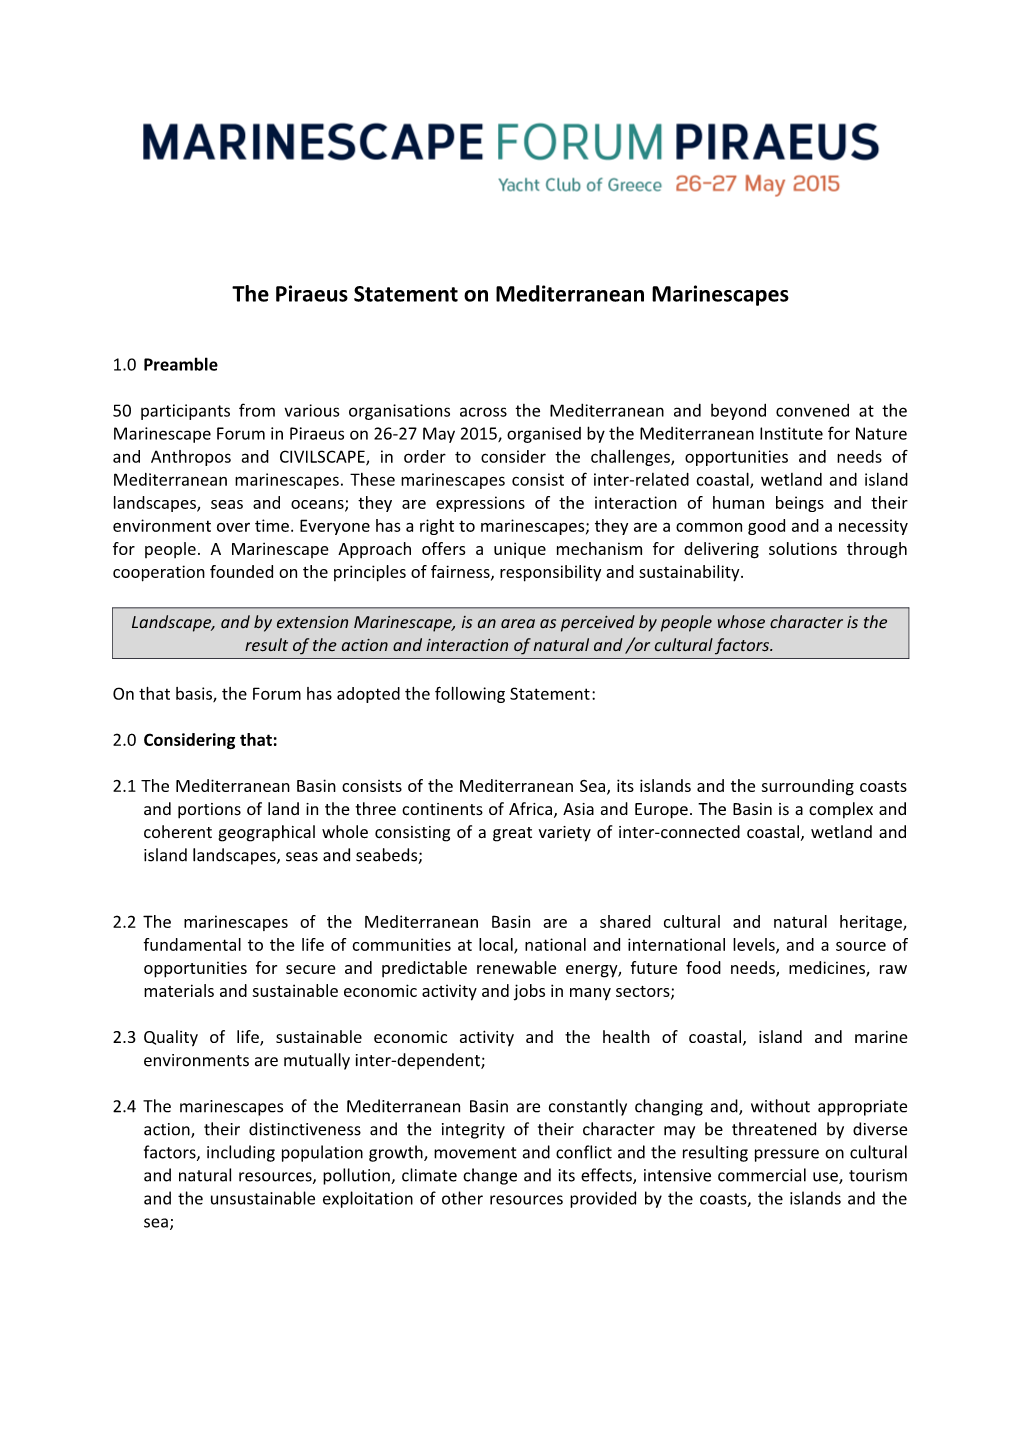 The Piraeus Statement on Mediterranean Marinescapes